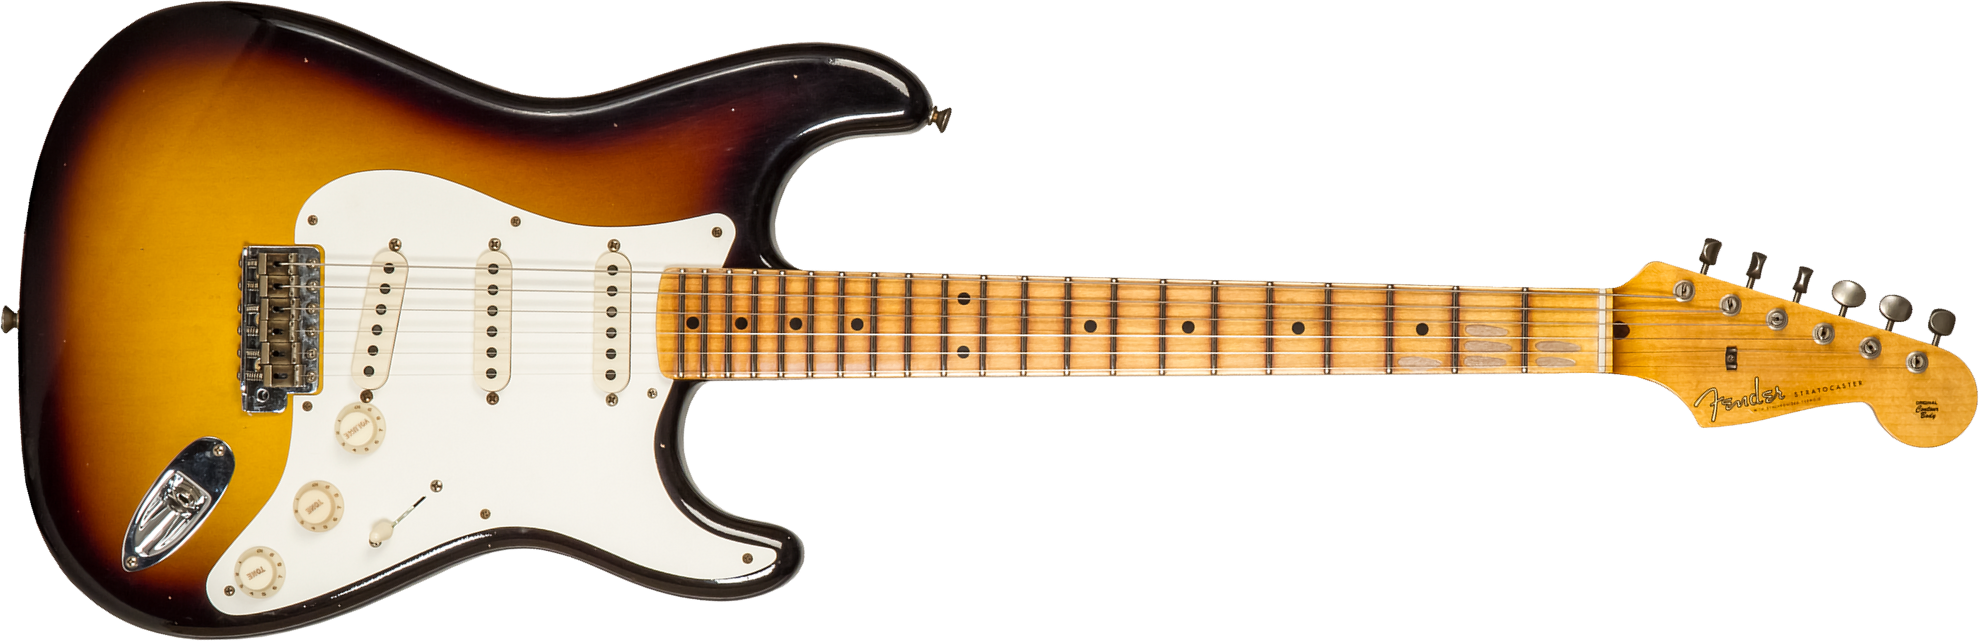 Fender Custom Shop Strat 1956 3s Trem Mn #cz575333 - Journeyman Relic 2-color Sunburst - Str shape electric guitar - Main picture